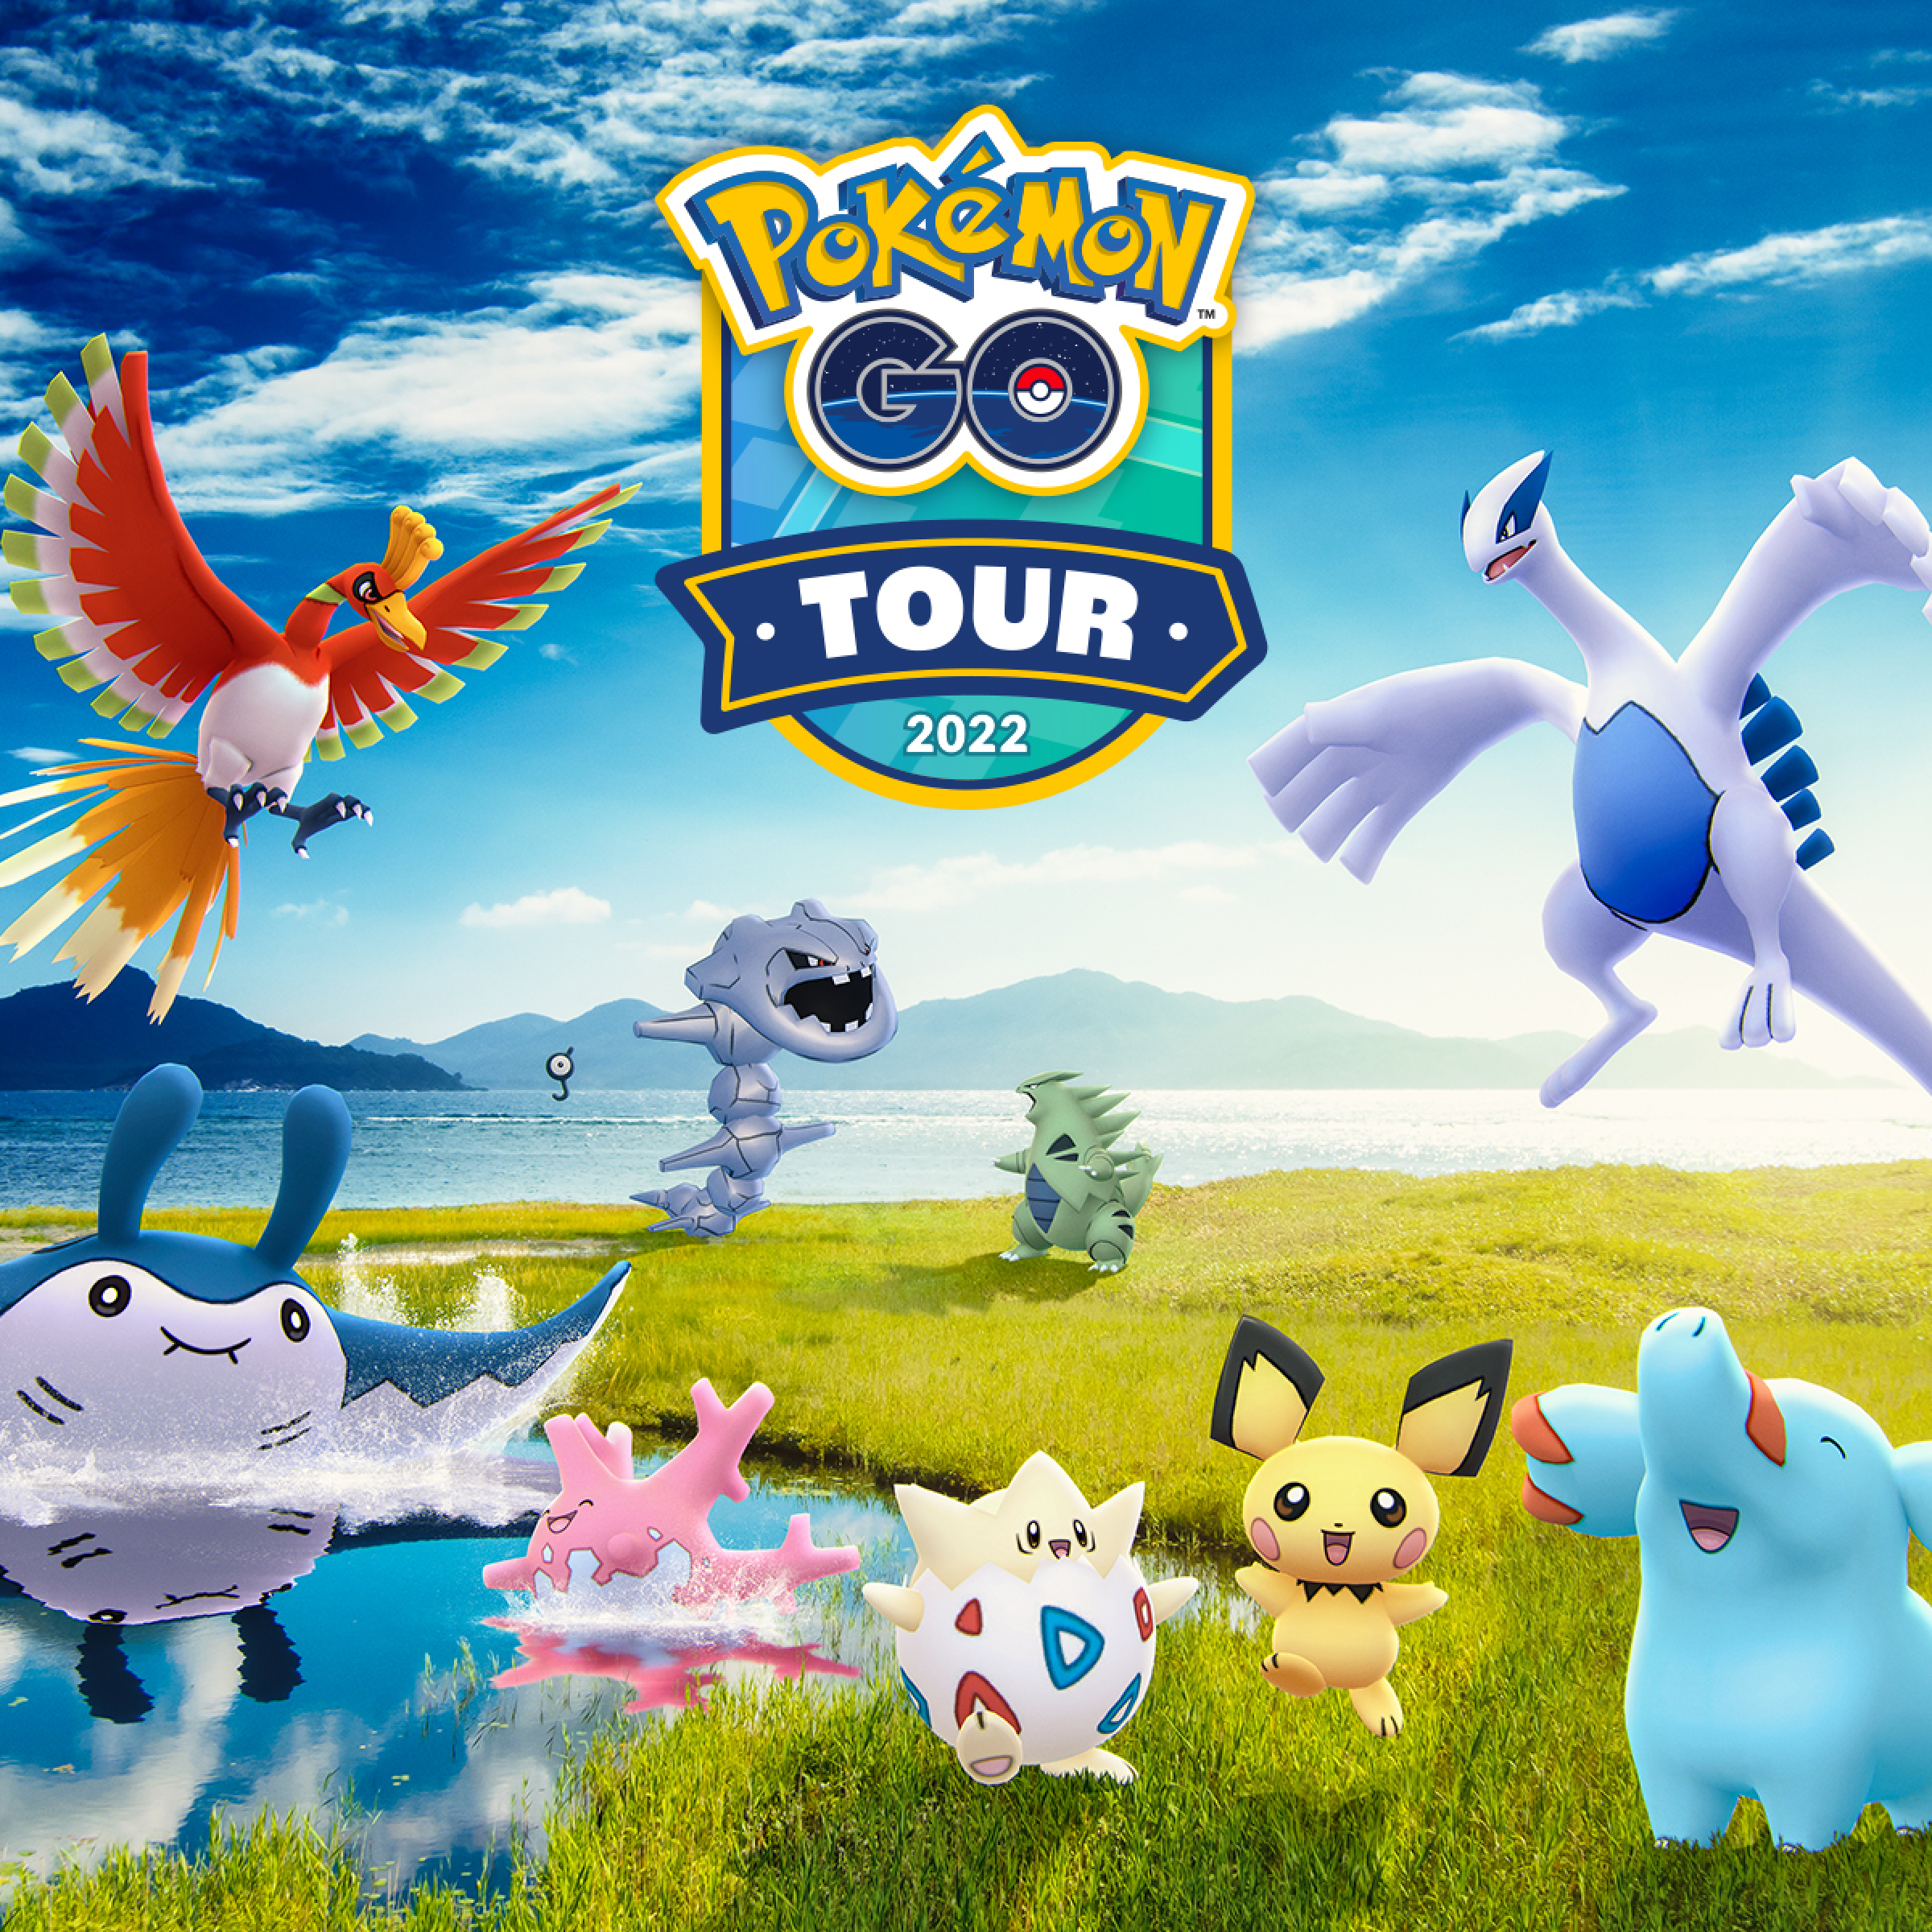 Pokémon GO Tour 2022